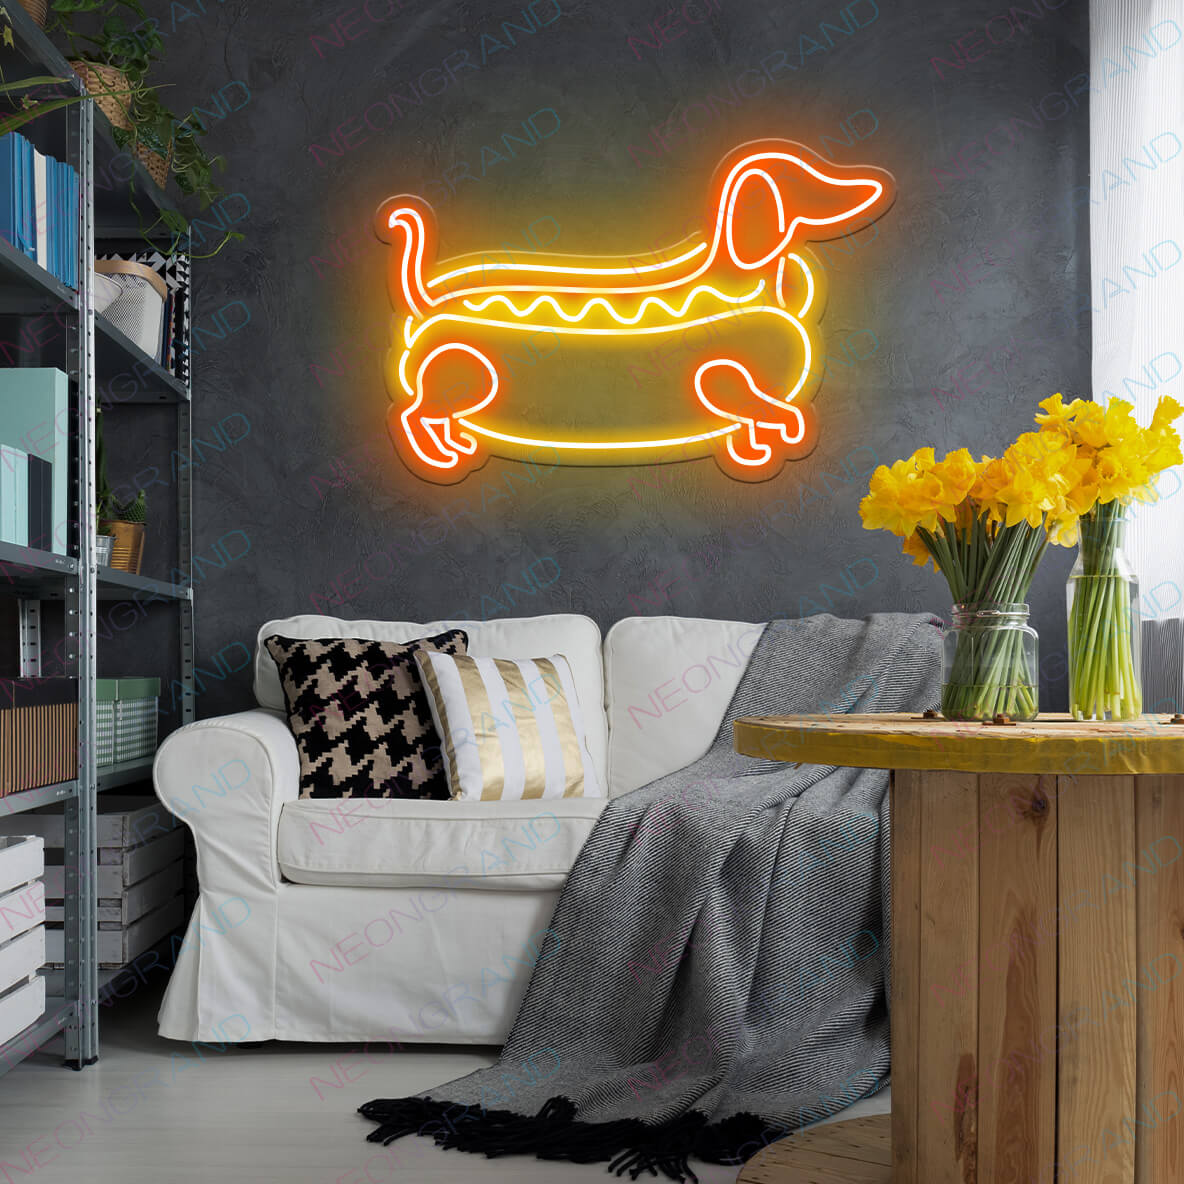 Dachshund Hot Dog Neon Sign Animal Led Light 1